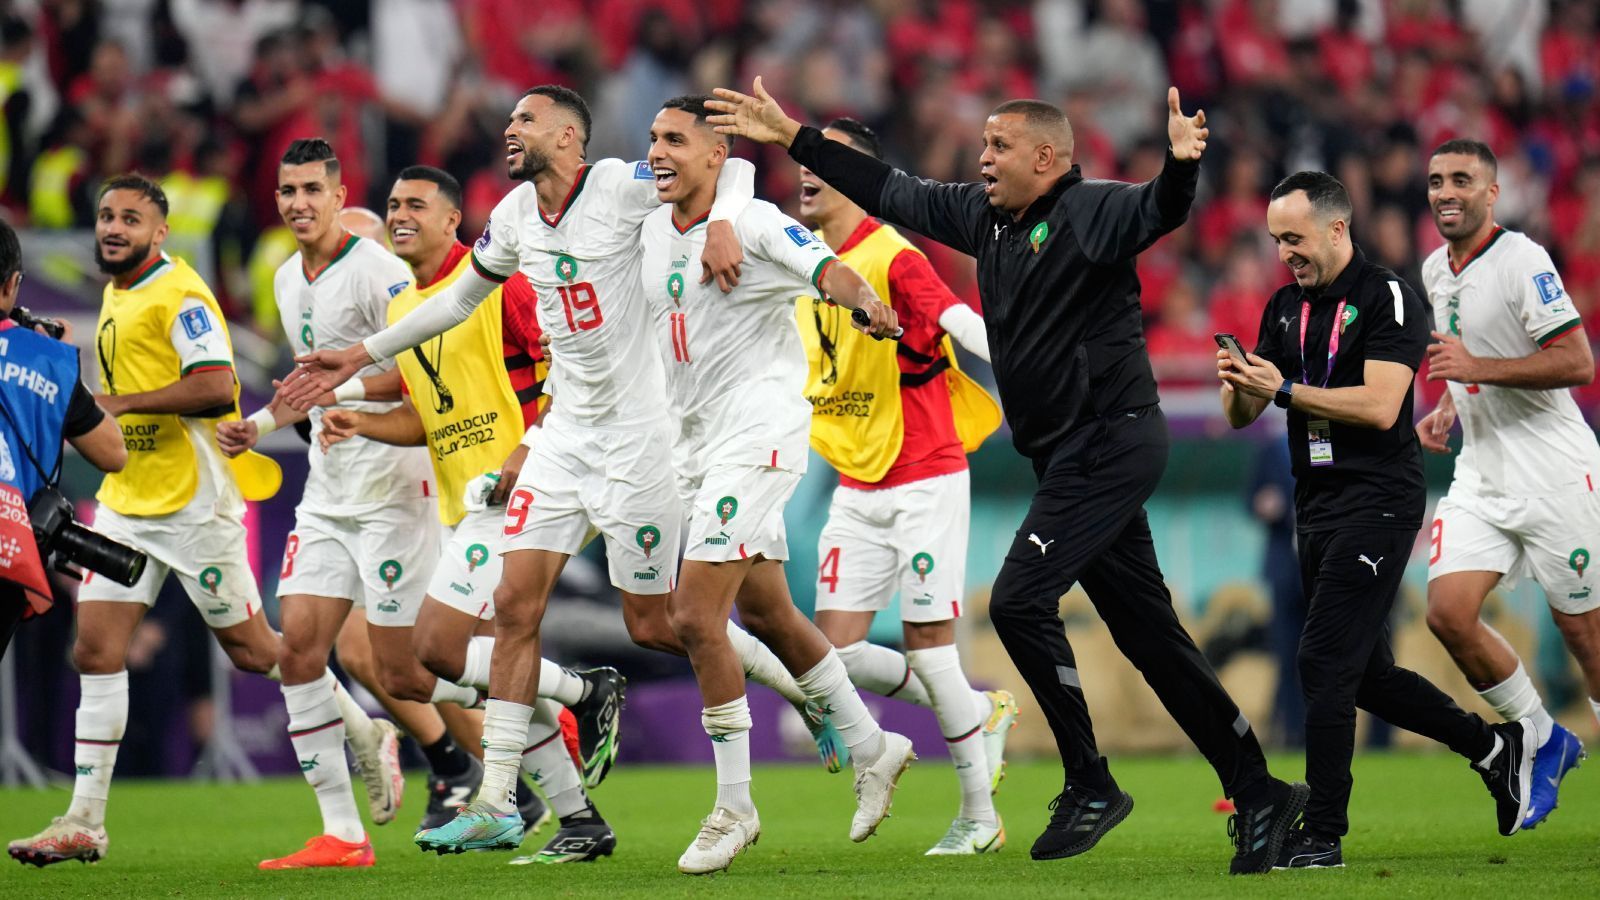 
                <strong>Platz 7: Marokko</strong><br>
                Es ist nicht weniger als ein Märchen, das die marokkanische Nationalmannschaft bei dieser WM schreibt. Nach einer bärenstarken Gruppenphase, in der die Marokkaner Gruppensieger vor Kroatien, Belgien und Kanada wurden, kämpften und bissen sie genau so leidenschaftlich im Achtelfinale gegen Spanien. Nach einem 0:0 in regulärer Spielzeit wurde Torwart Yassine Bounou mit zwei gehaltenen Strafstößen zum Helden. Überhaupt ist Marokkos Defensive erstklassig: In vier Spielen inklusive Elfmeterschießen kassierten sie nur ein Gegentor, das erzielte in Nayef Aguerd auch noch ein eigener Mann. Einziges Manko: Während die erste Elf sehr gut besetzt ist, mangelt es hingegen an Qualität von der Bank. Vor dem Viertelfinal-Duell gegen Portugal also "nur" Platz sieben.
              